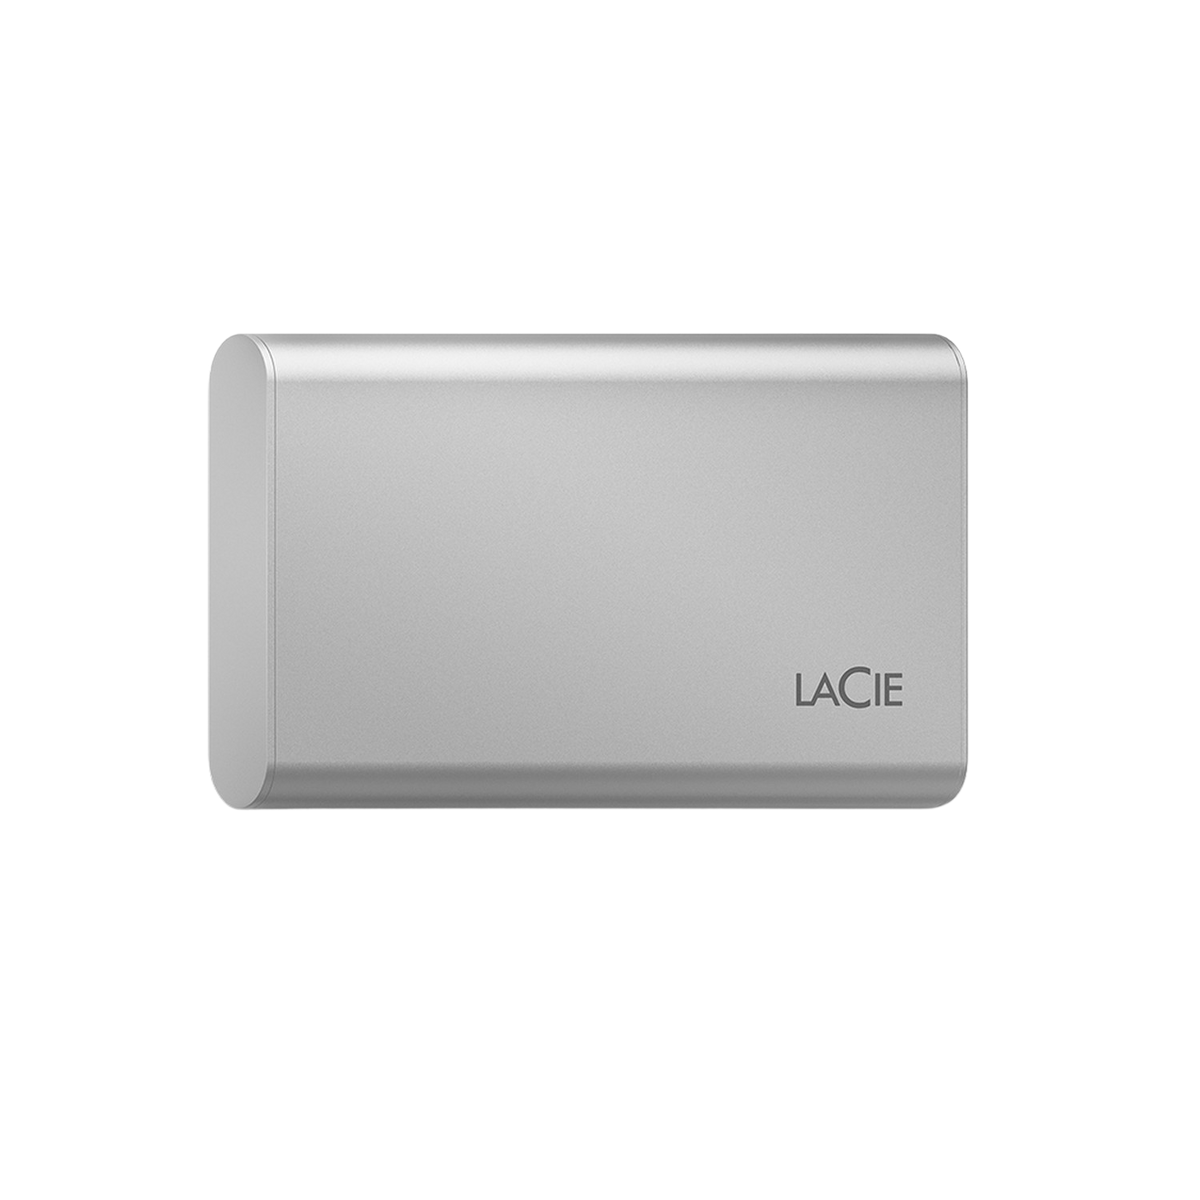 LACIE STKS1000400 PORTABLE SSD Silber extern, TB 500GB, Zoll, 1 V2 2,5 SSD